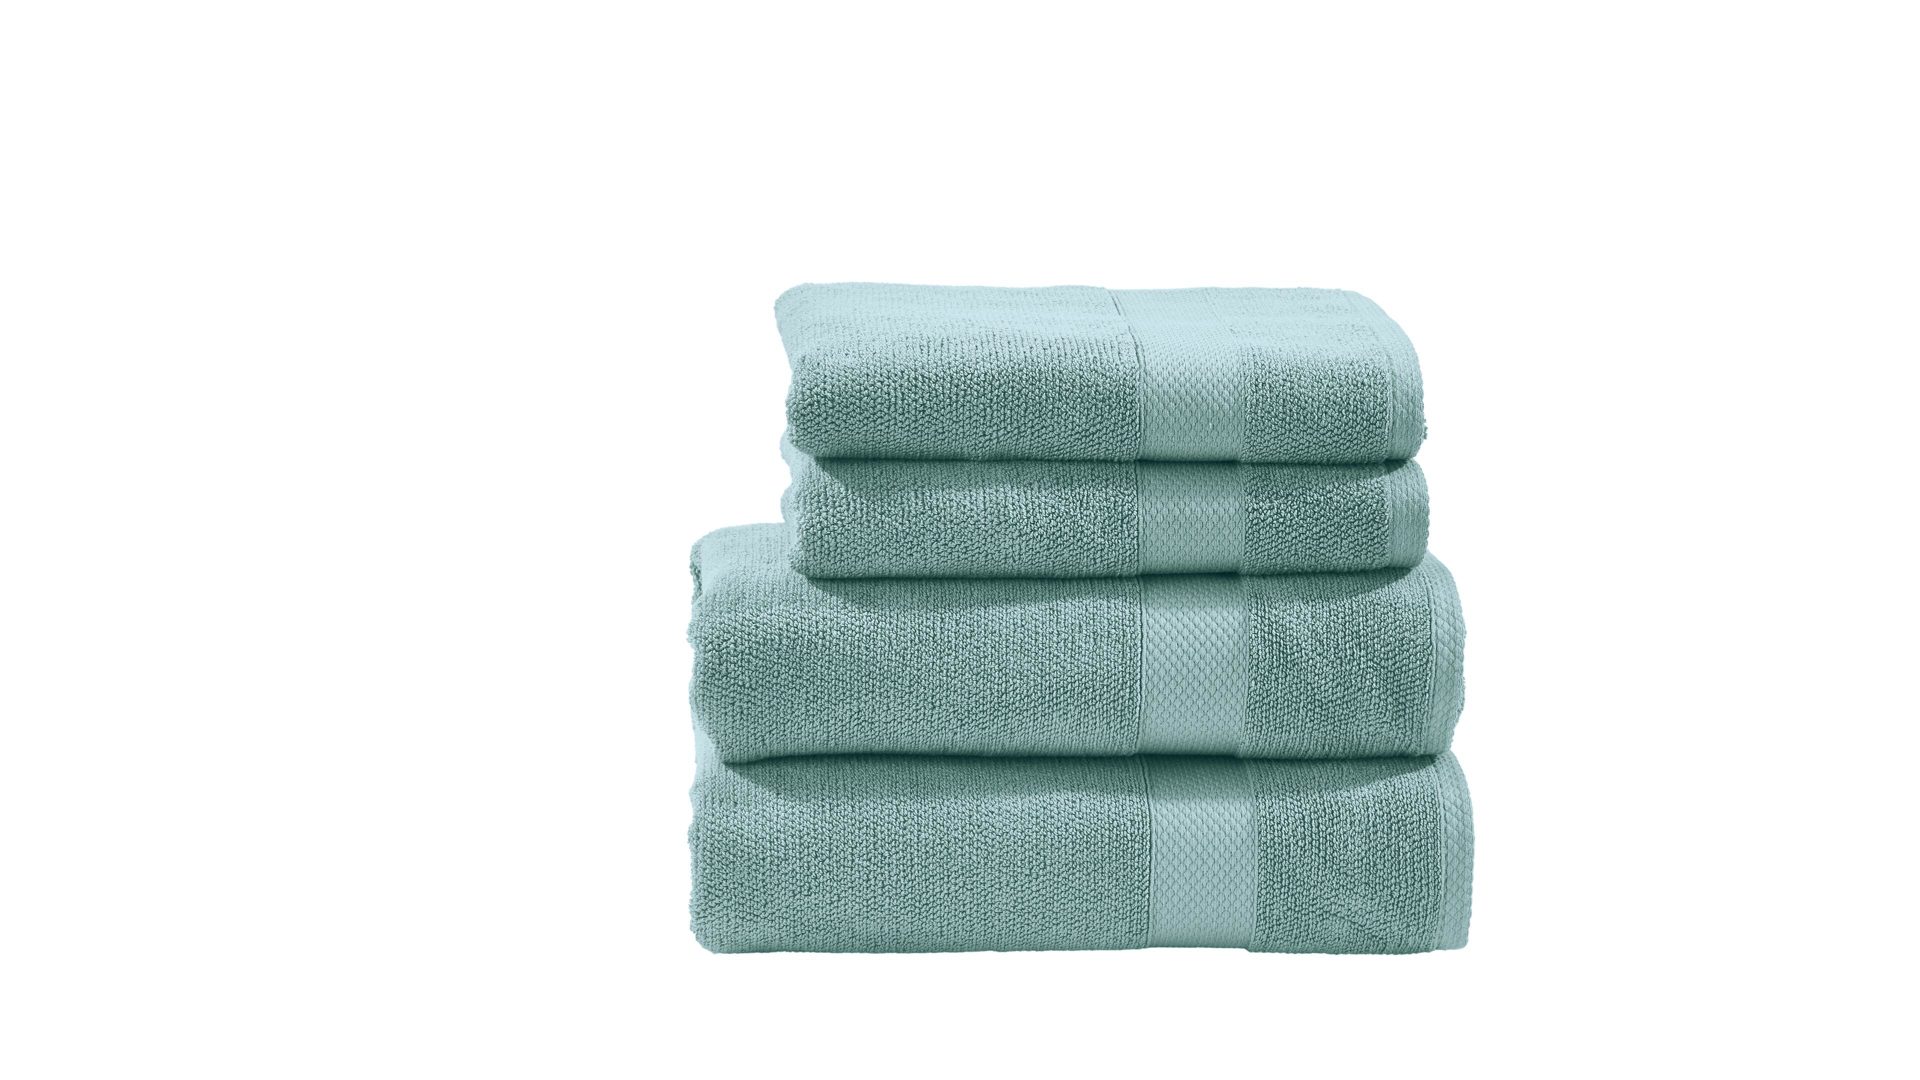 Handtuch-Set Done® by karabel home company aus Stoff in Grün DONE® Handtuch-Set Deluxe oceanfarbene Baumwolle – vierteilig